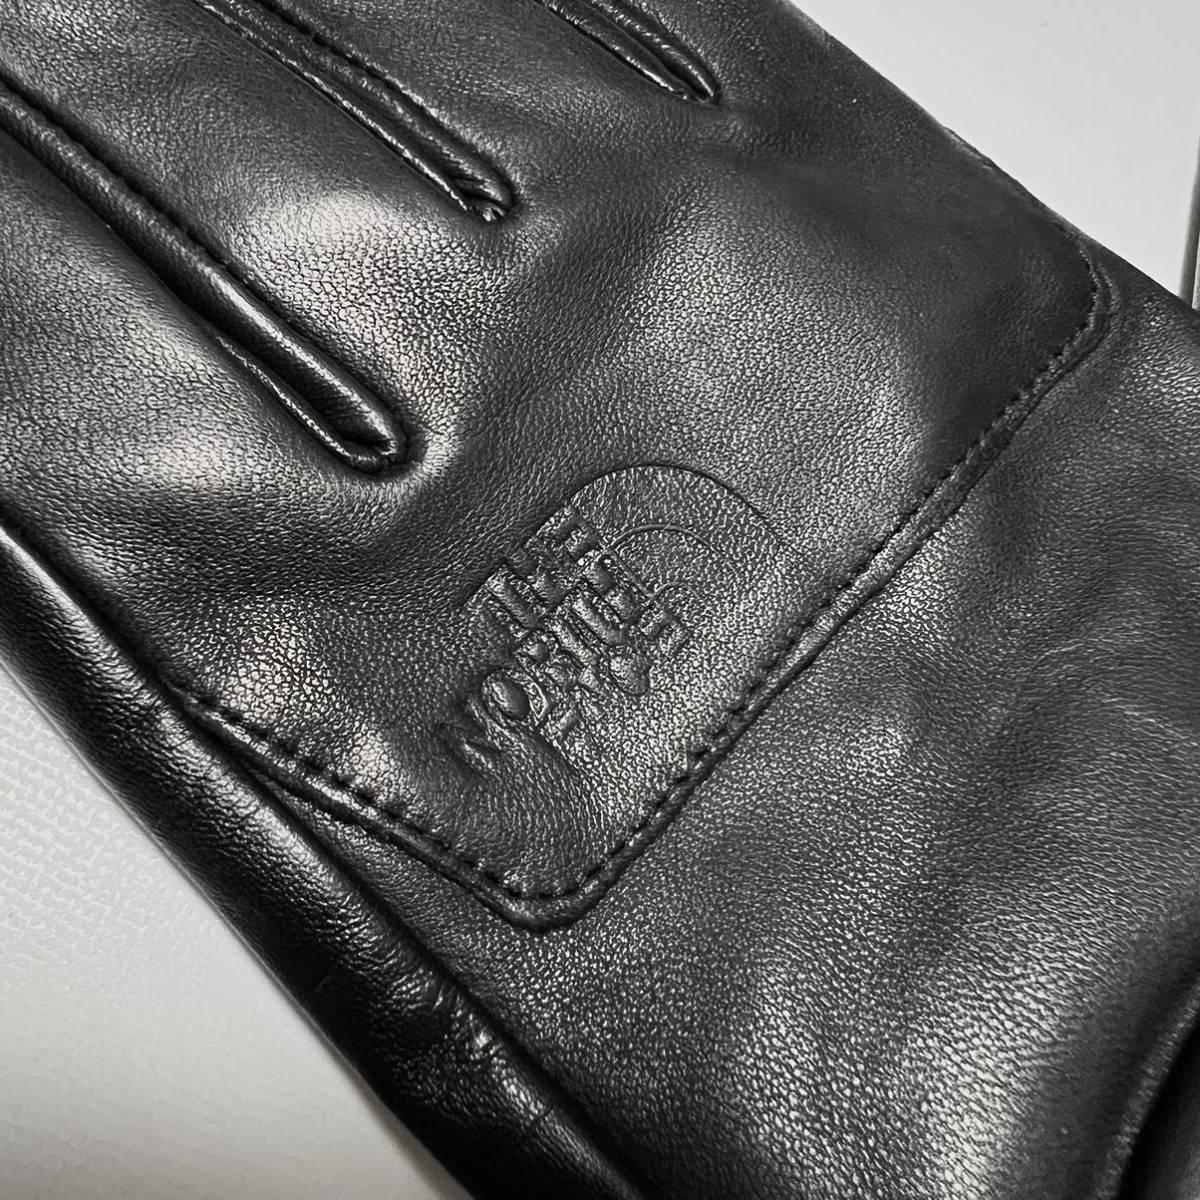 M 新品 ノースフェイス 購入 レザー グローブ ブラック 手袋 レザーグローブ 防寒 革製 黒 上品なレザー仕様 THE NORTH FACE Glove